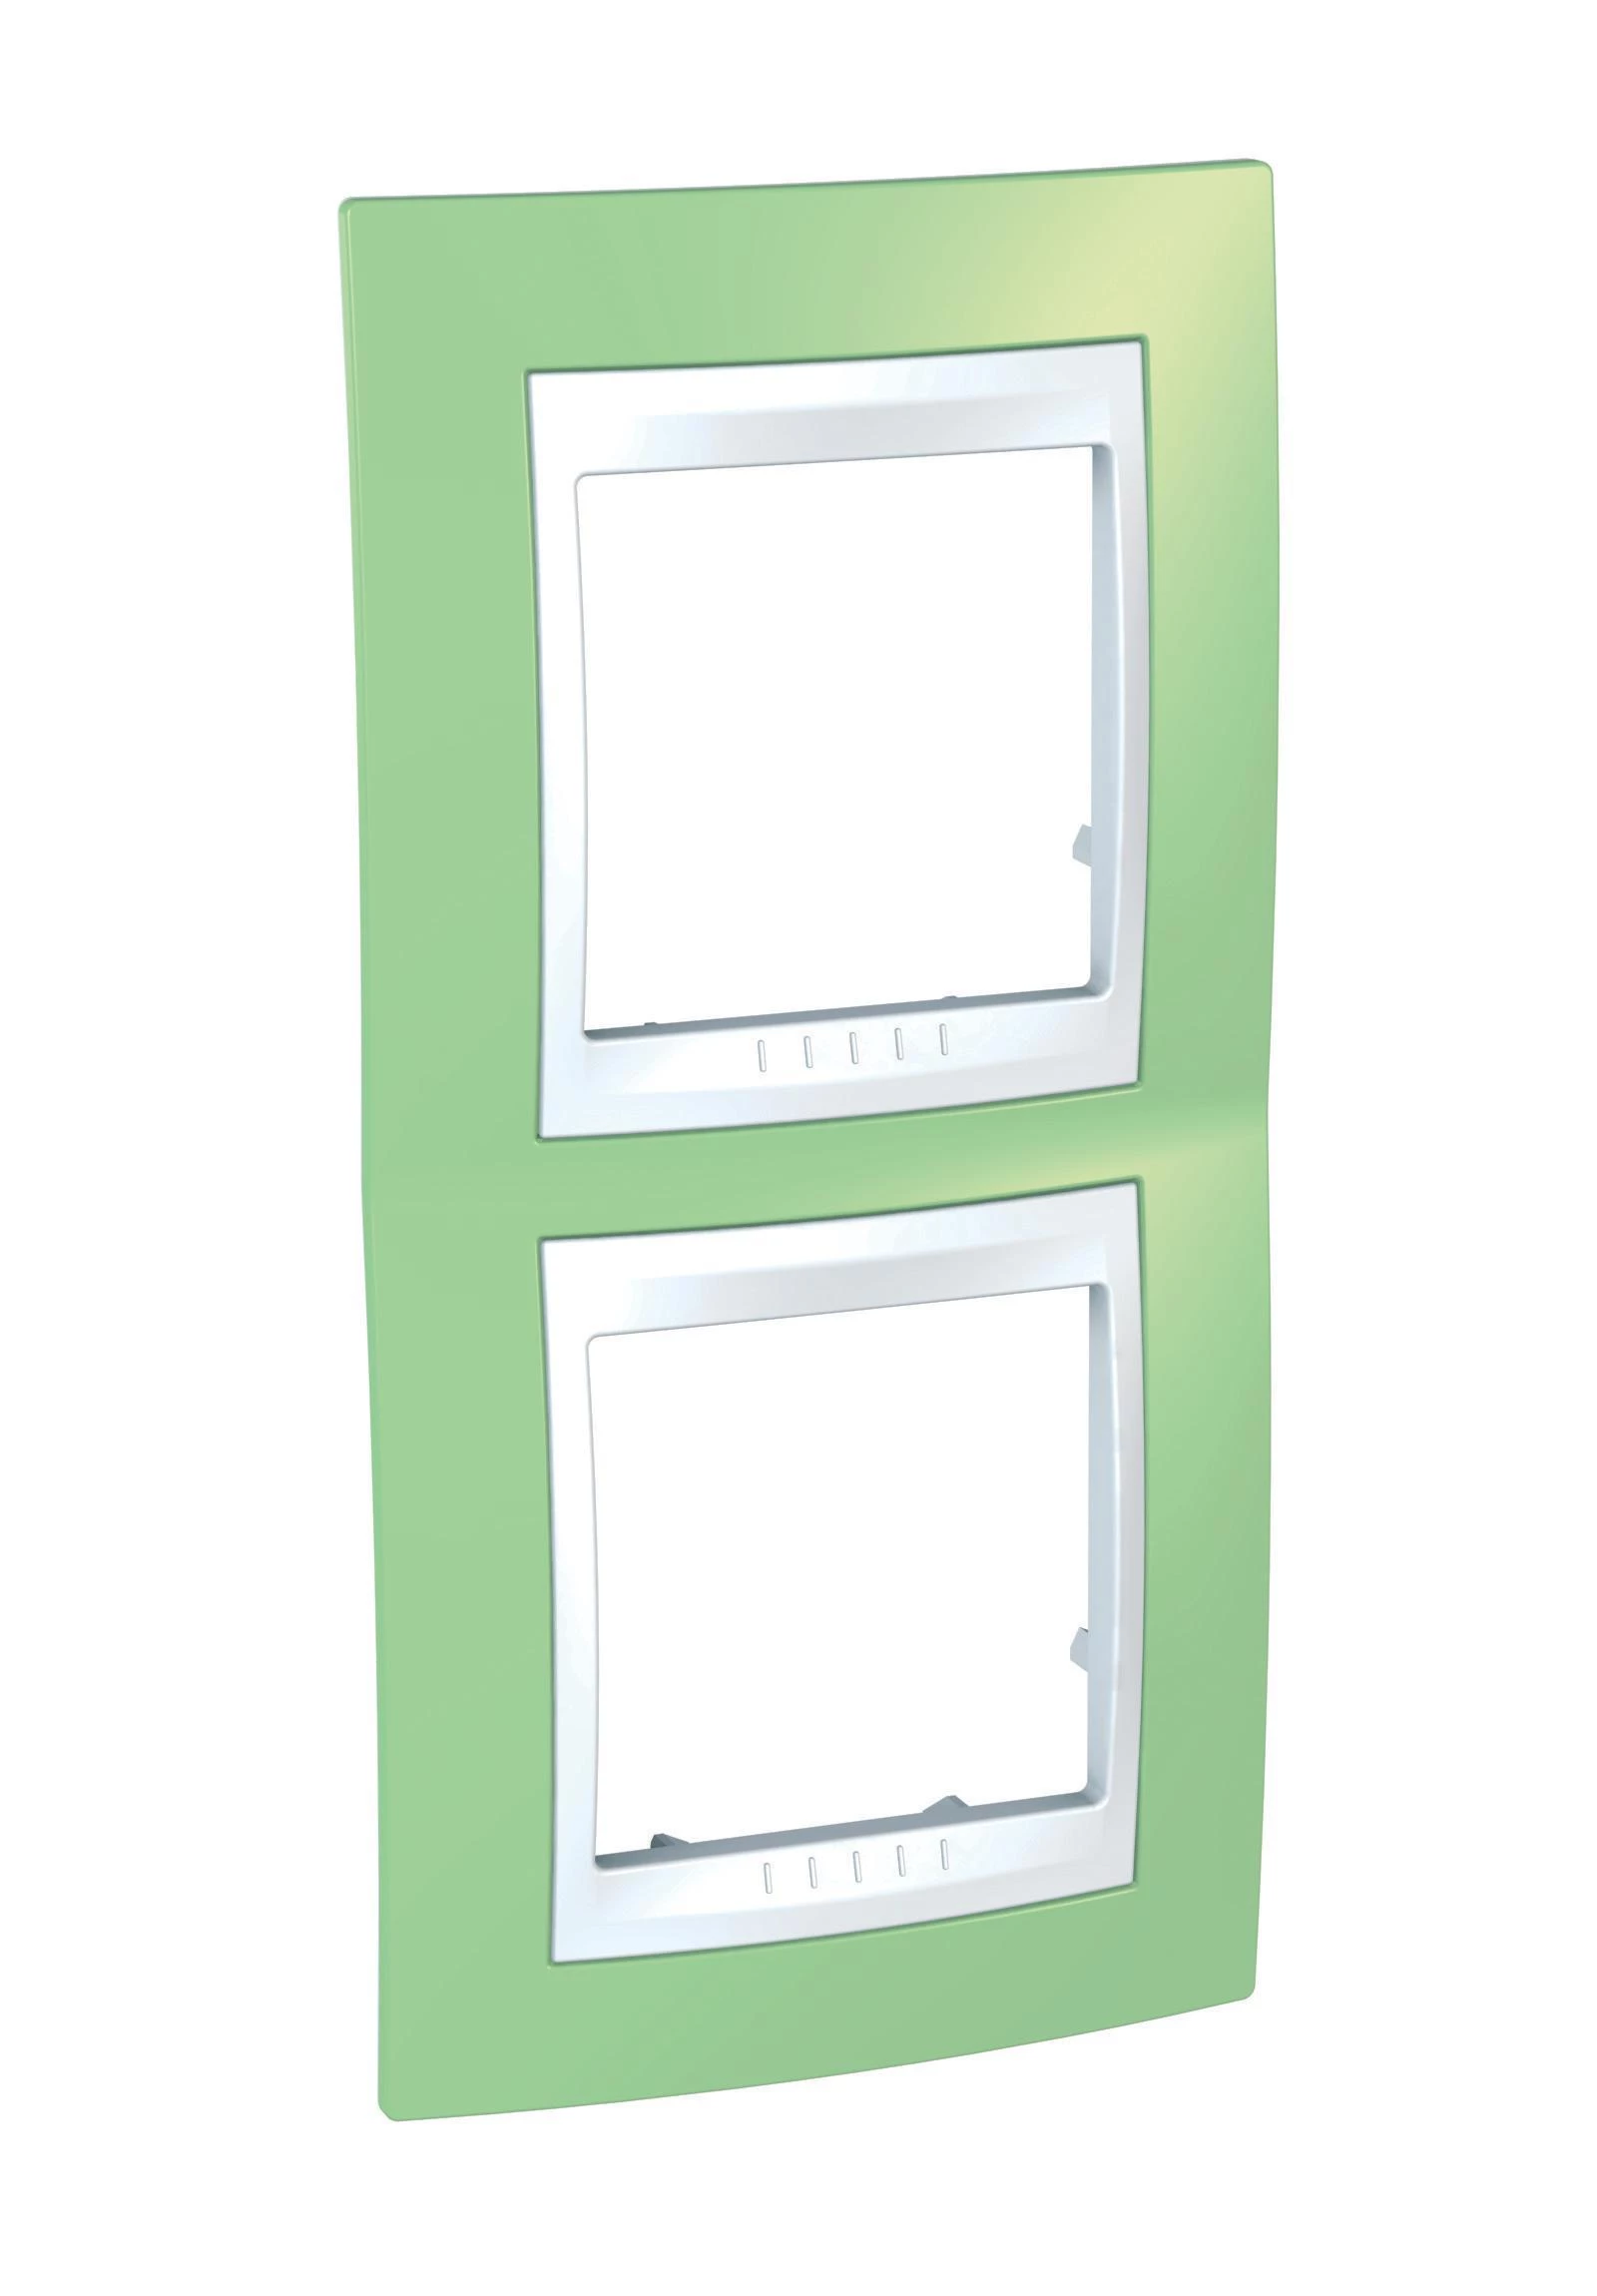  артикул MGU6.004V.863 название Рамка 2-ая (двойная) вертикальная , Зеленое яблоко/Белый, серия Unica, Schneider Electric